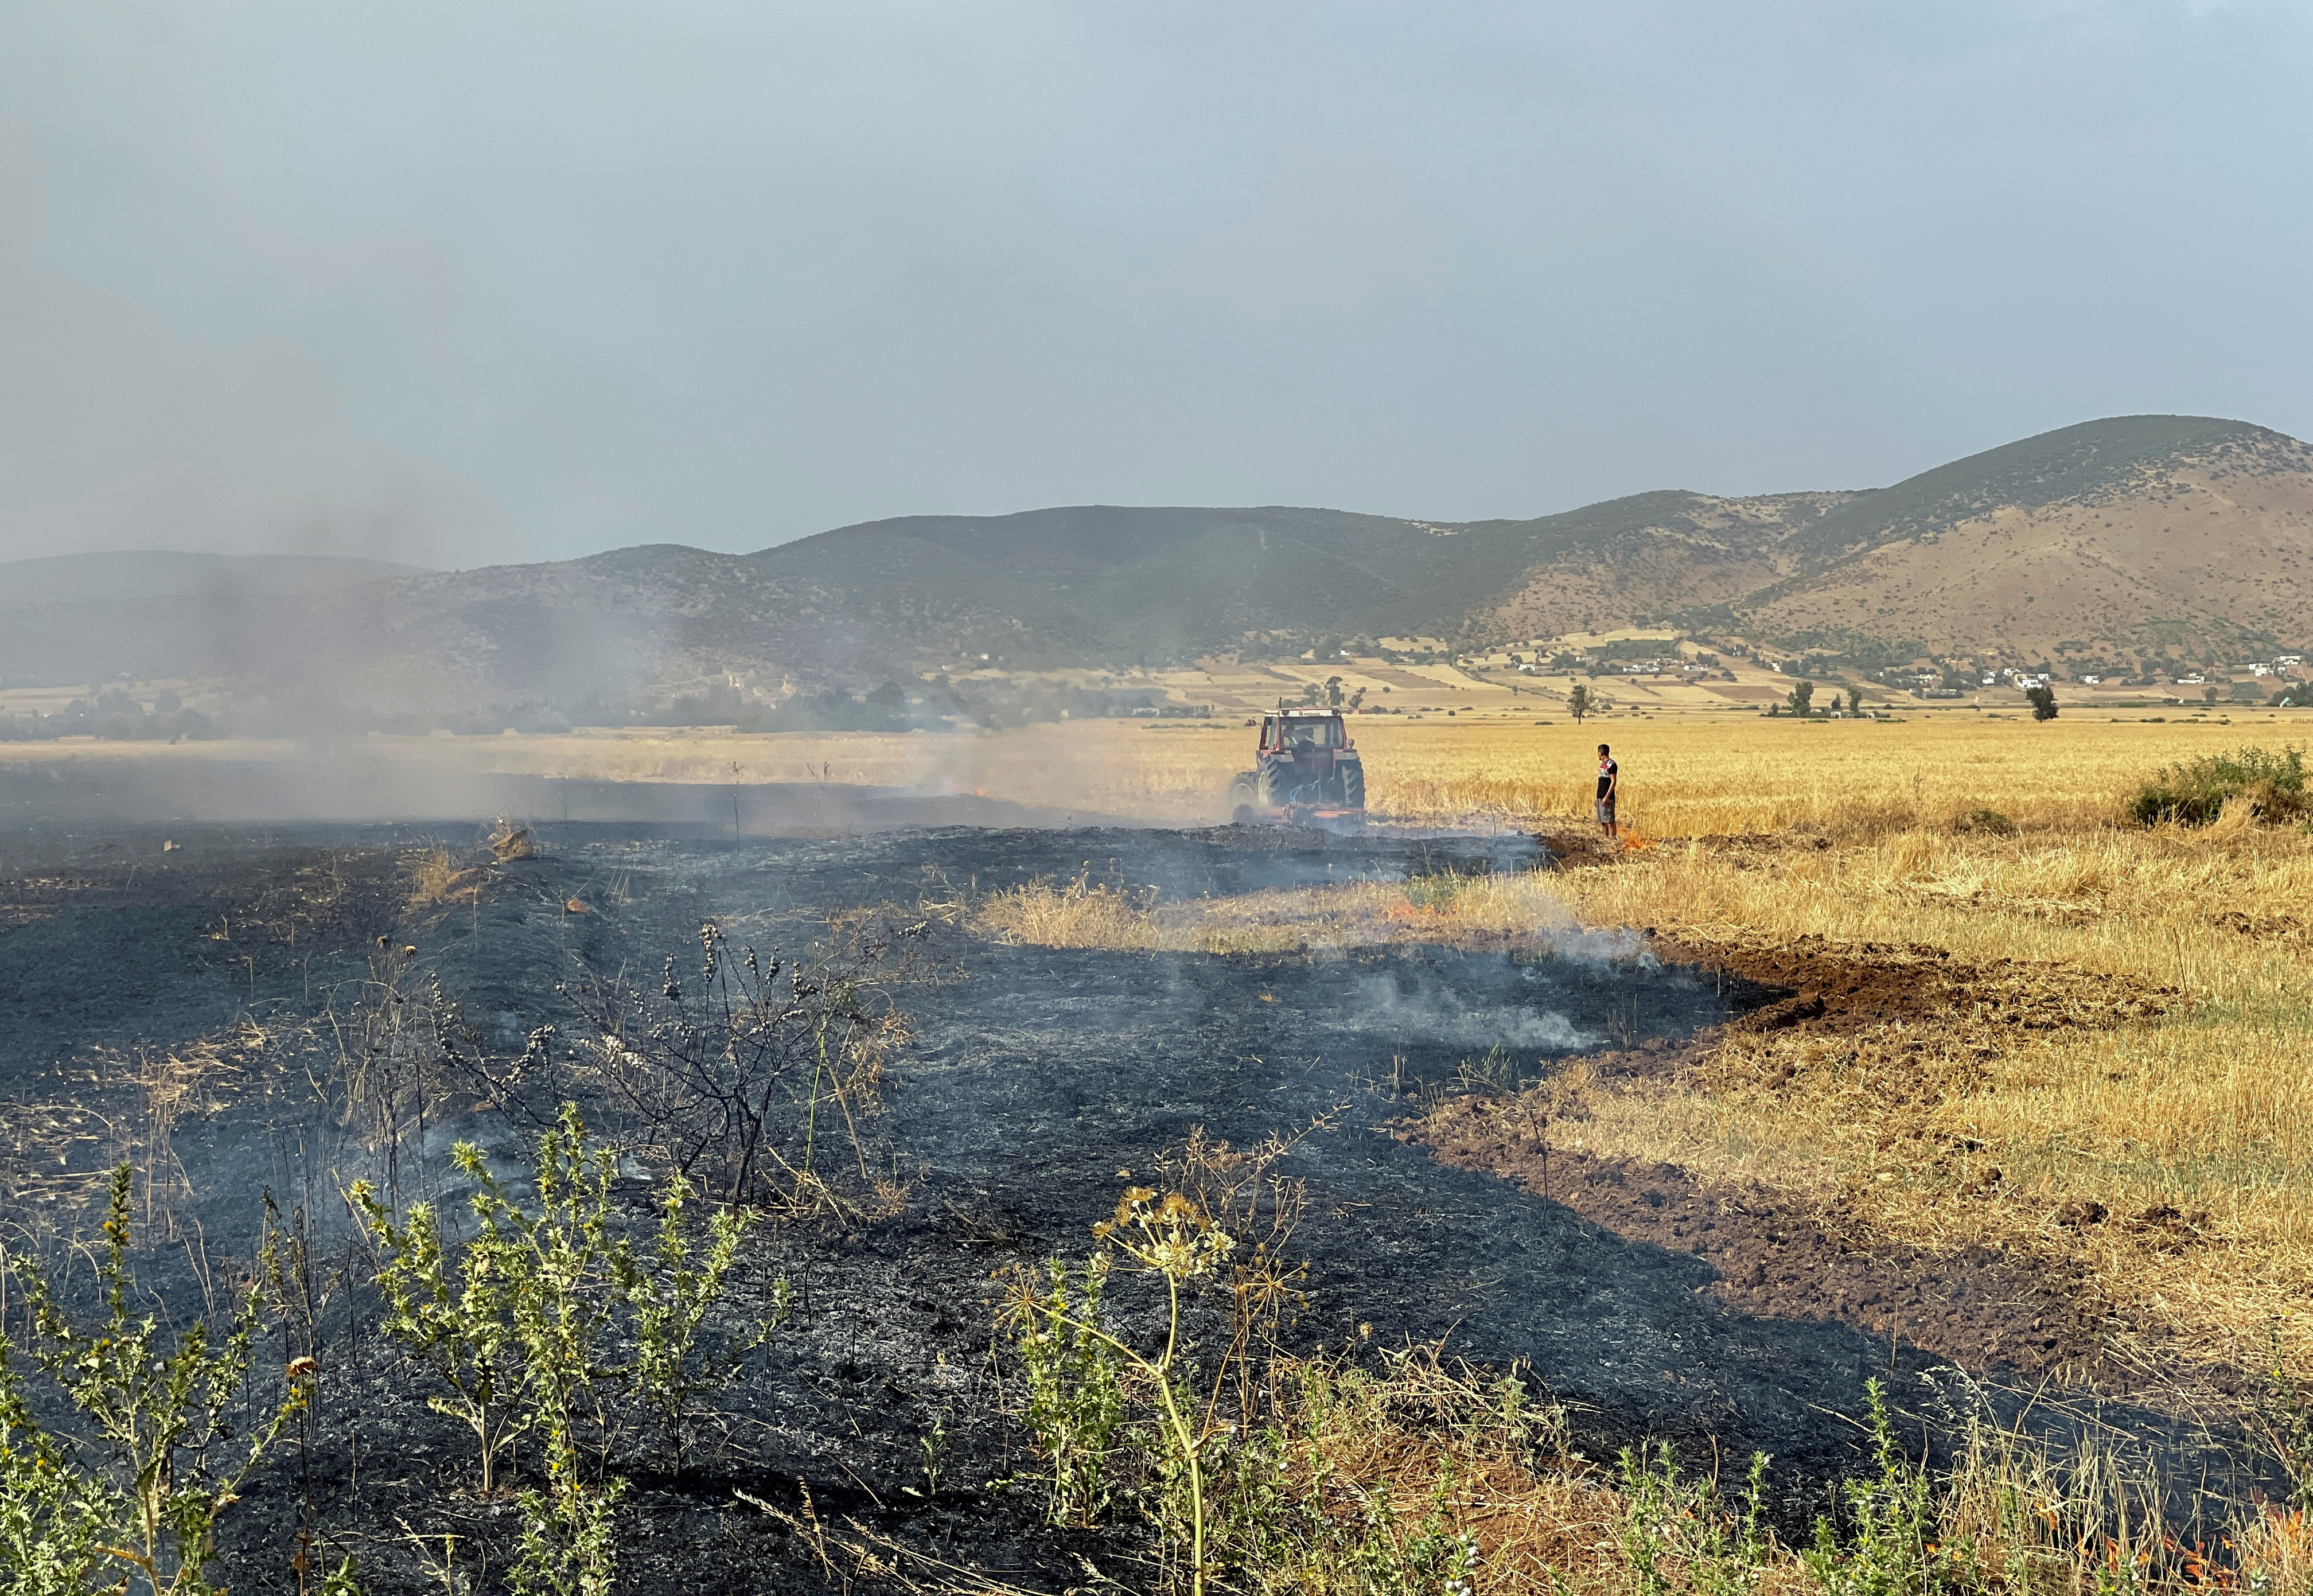 A farmer stands in a wheat field, burned by fire, in Jendouba